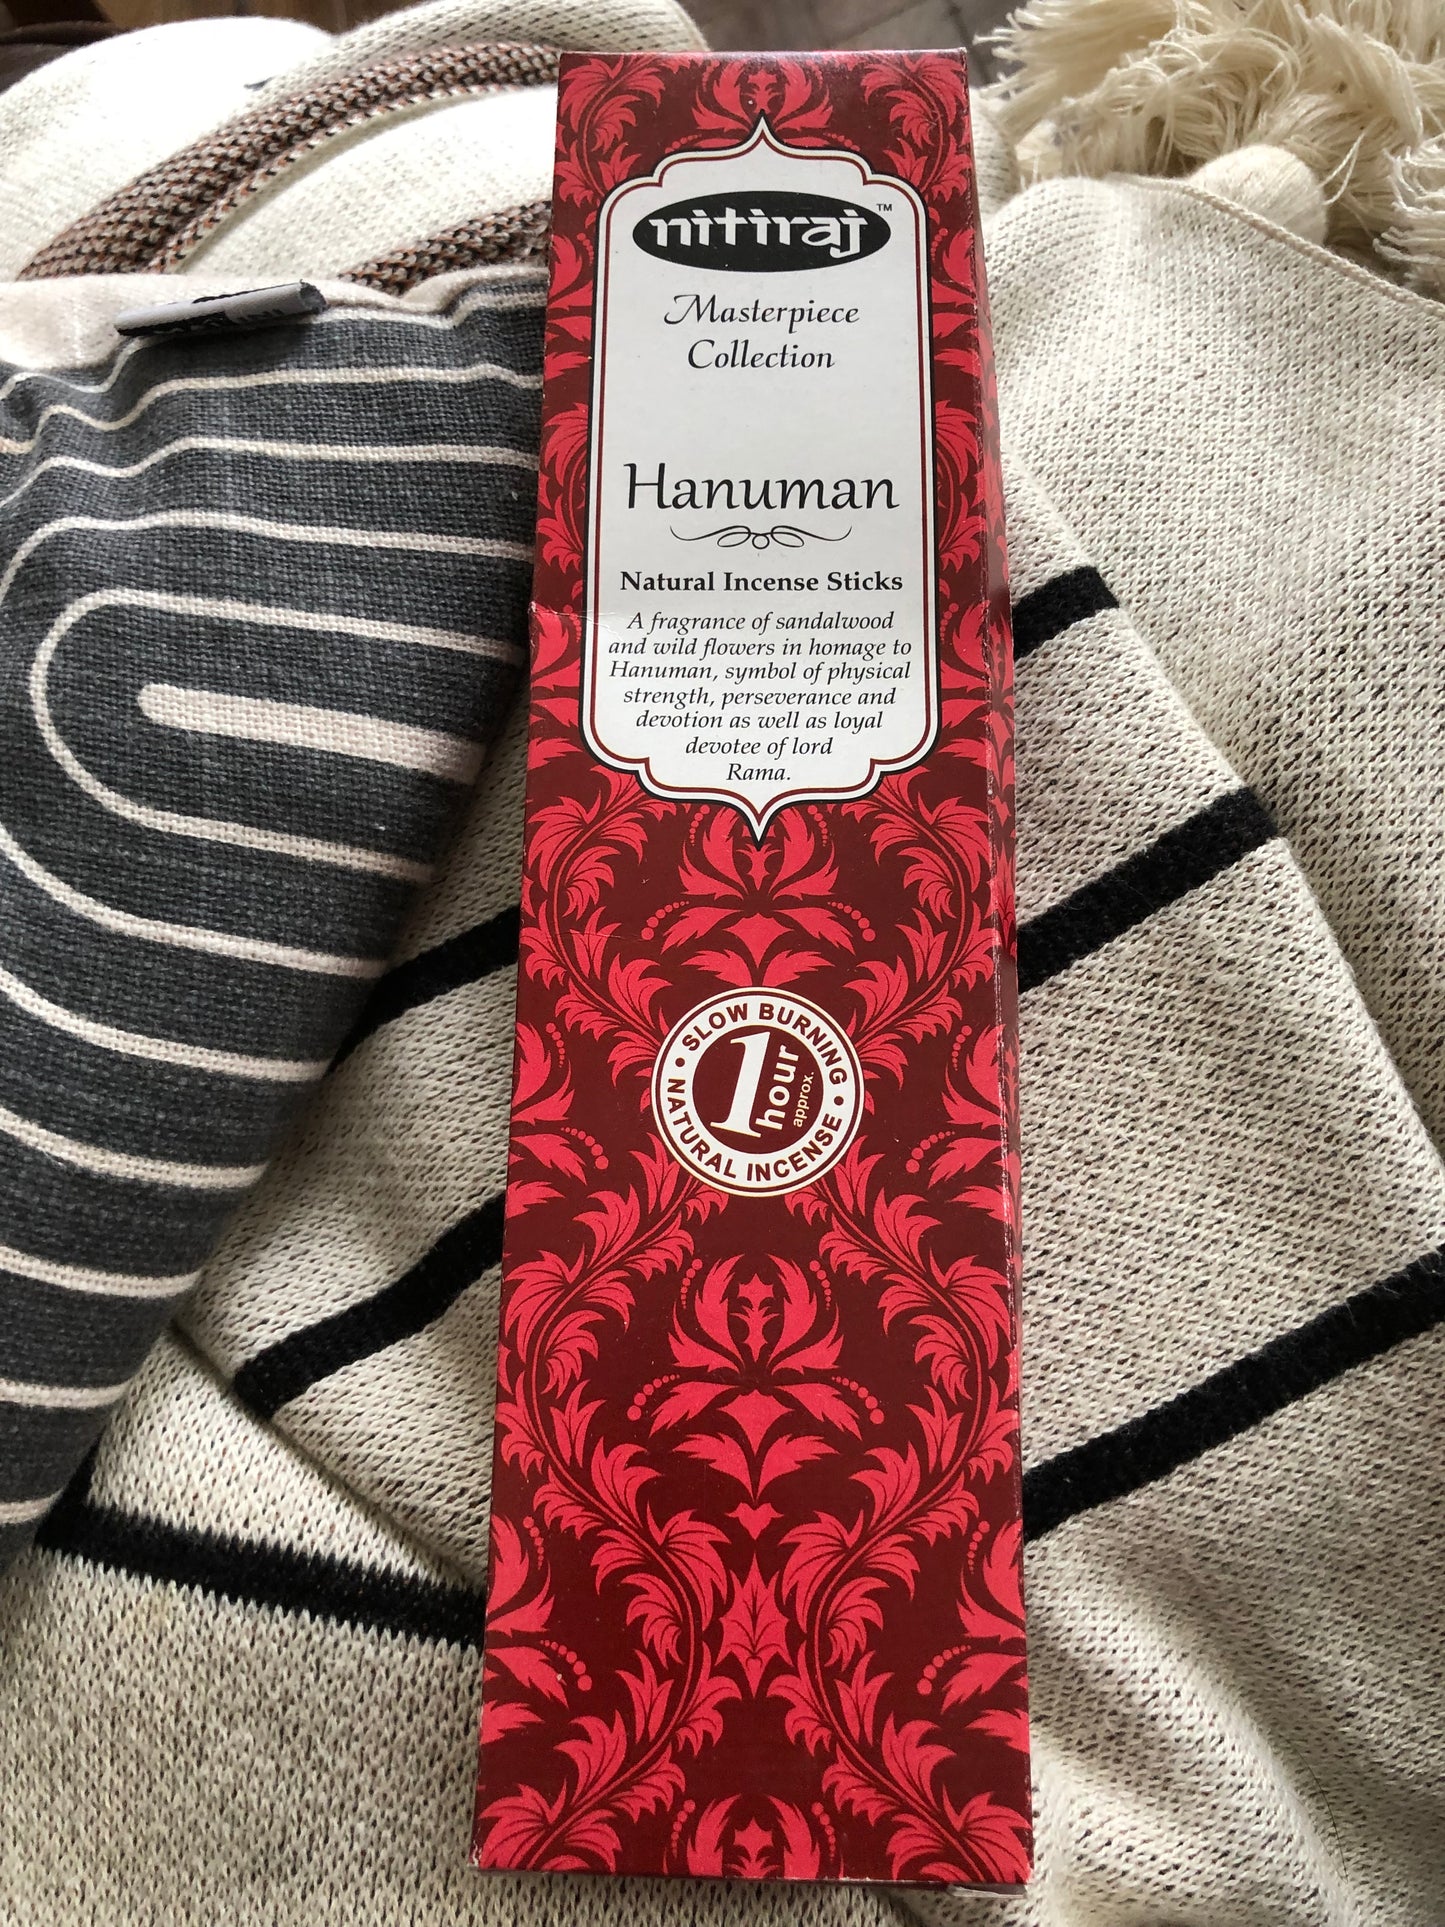 Hanuman Premium Incense Sticks